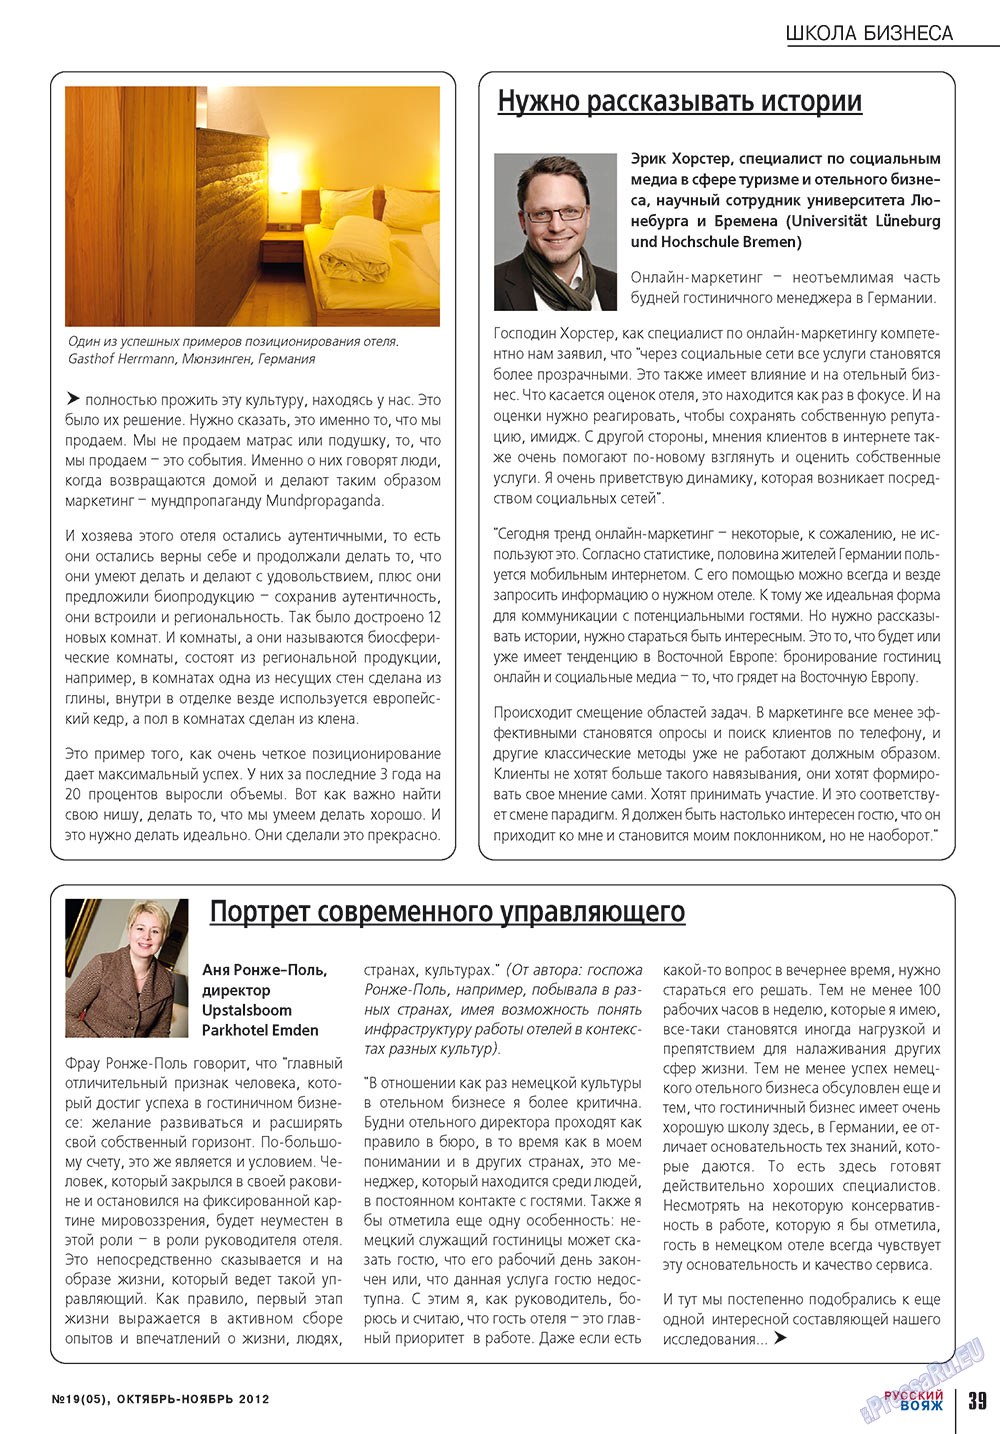 Русский вояж (журнал). 2012 год, номер 19, стр. 39